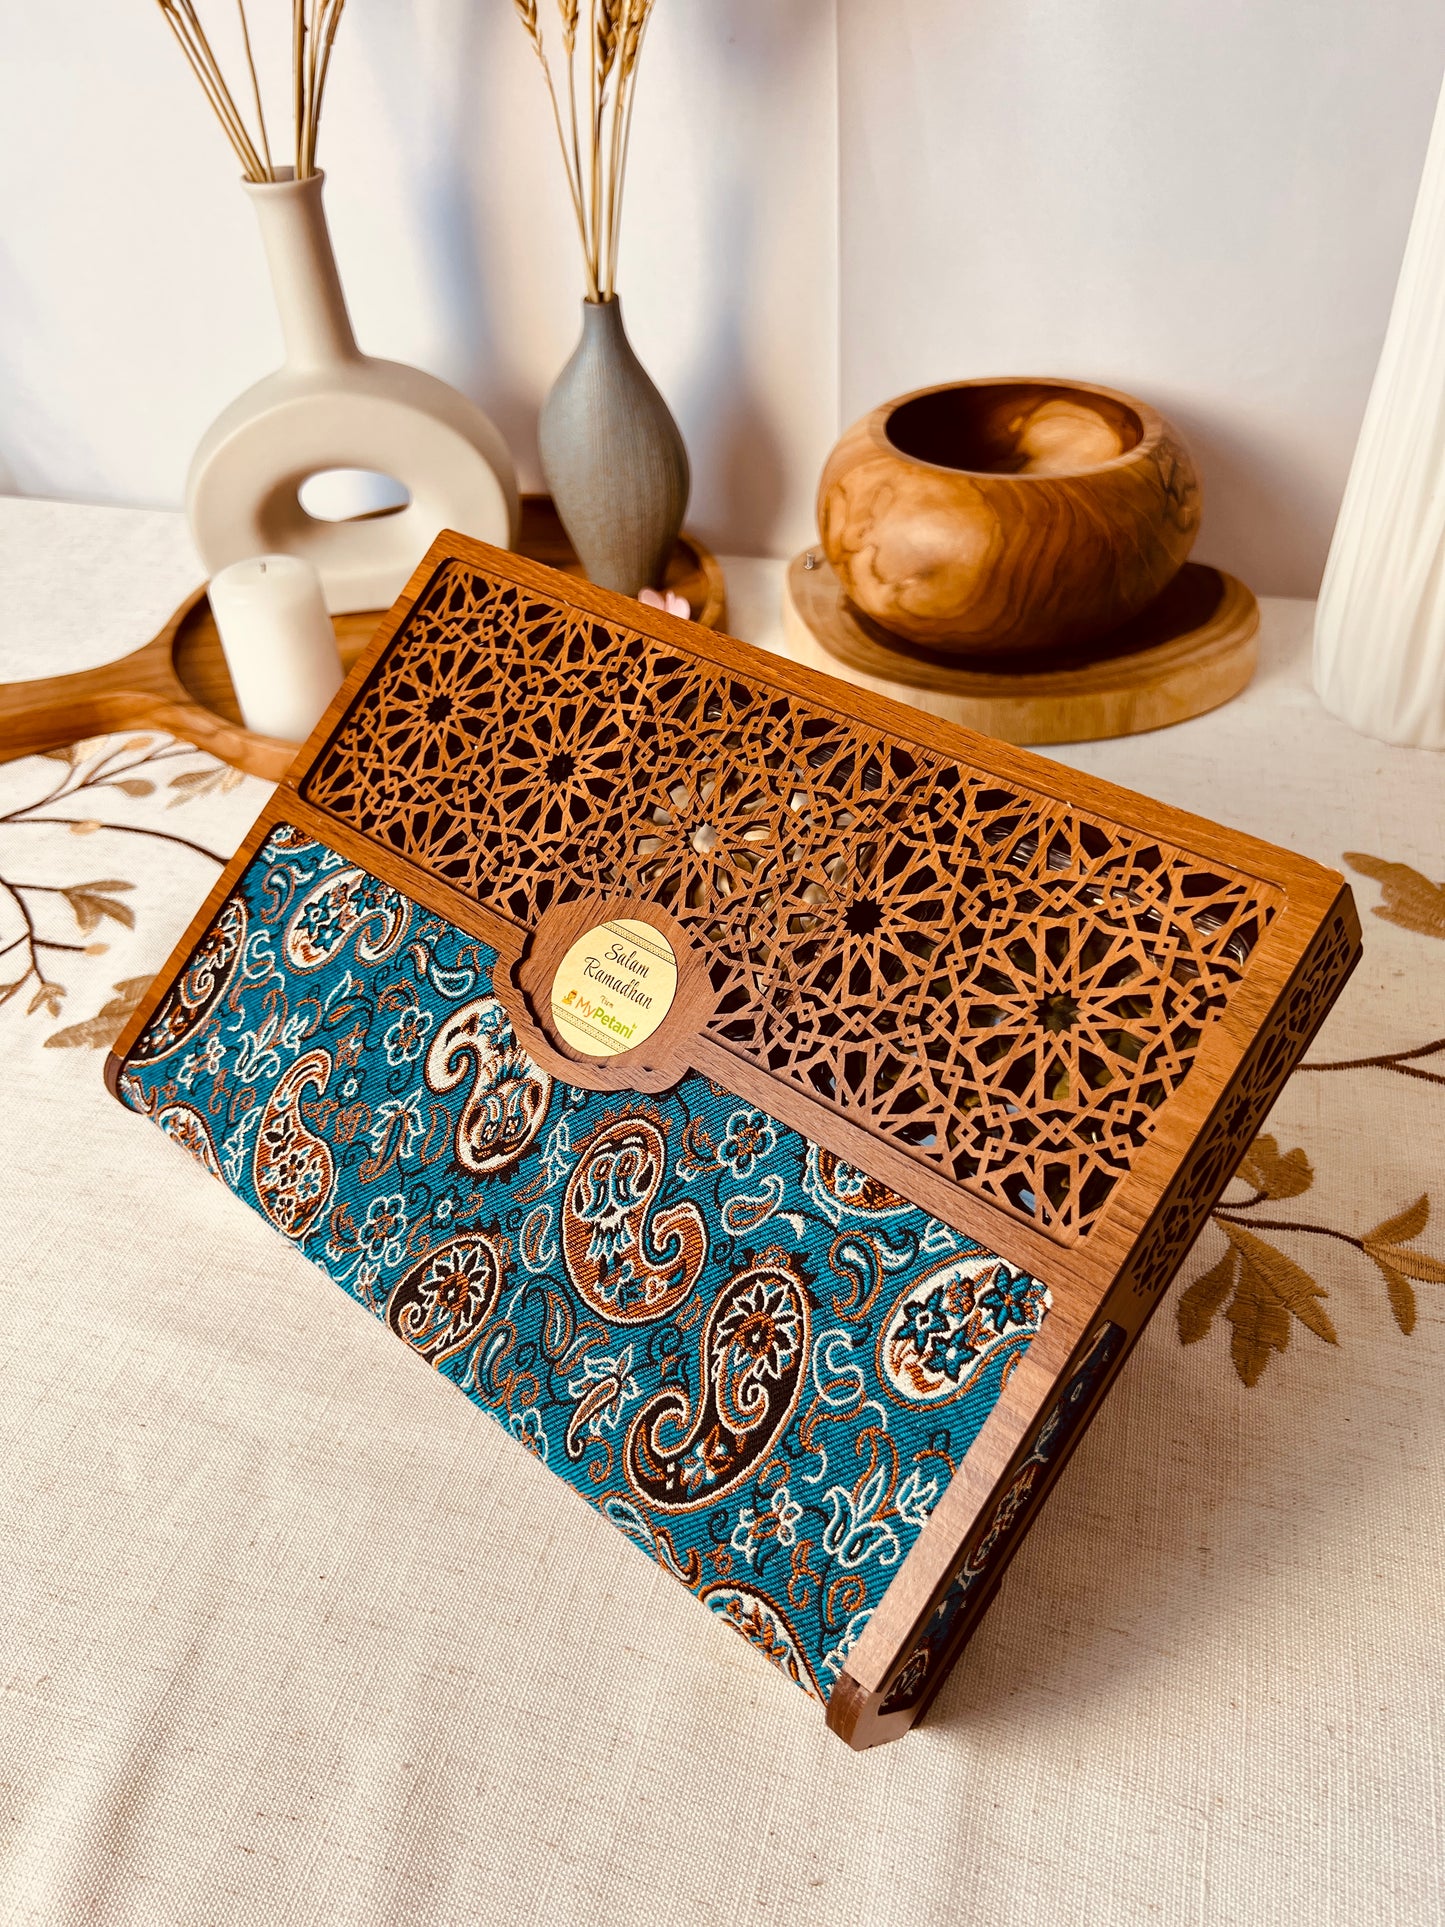 Iman Gift Box